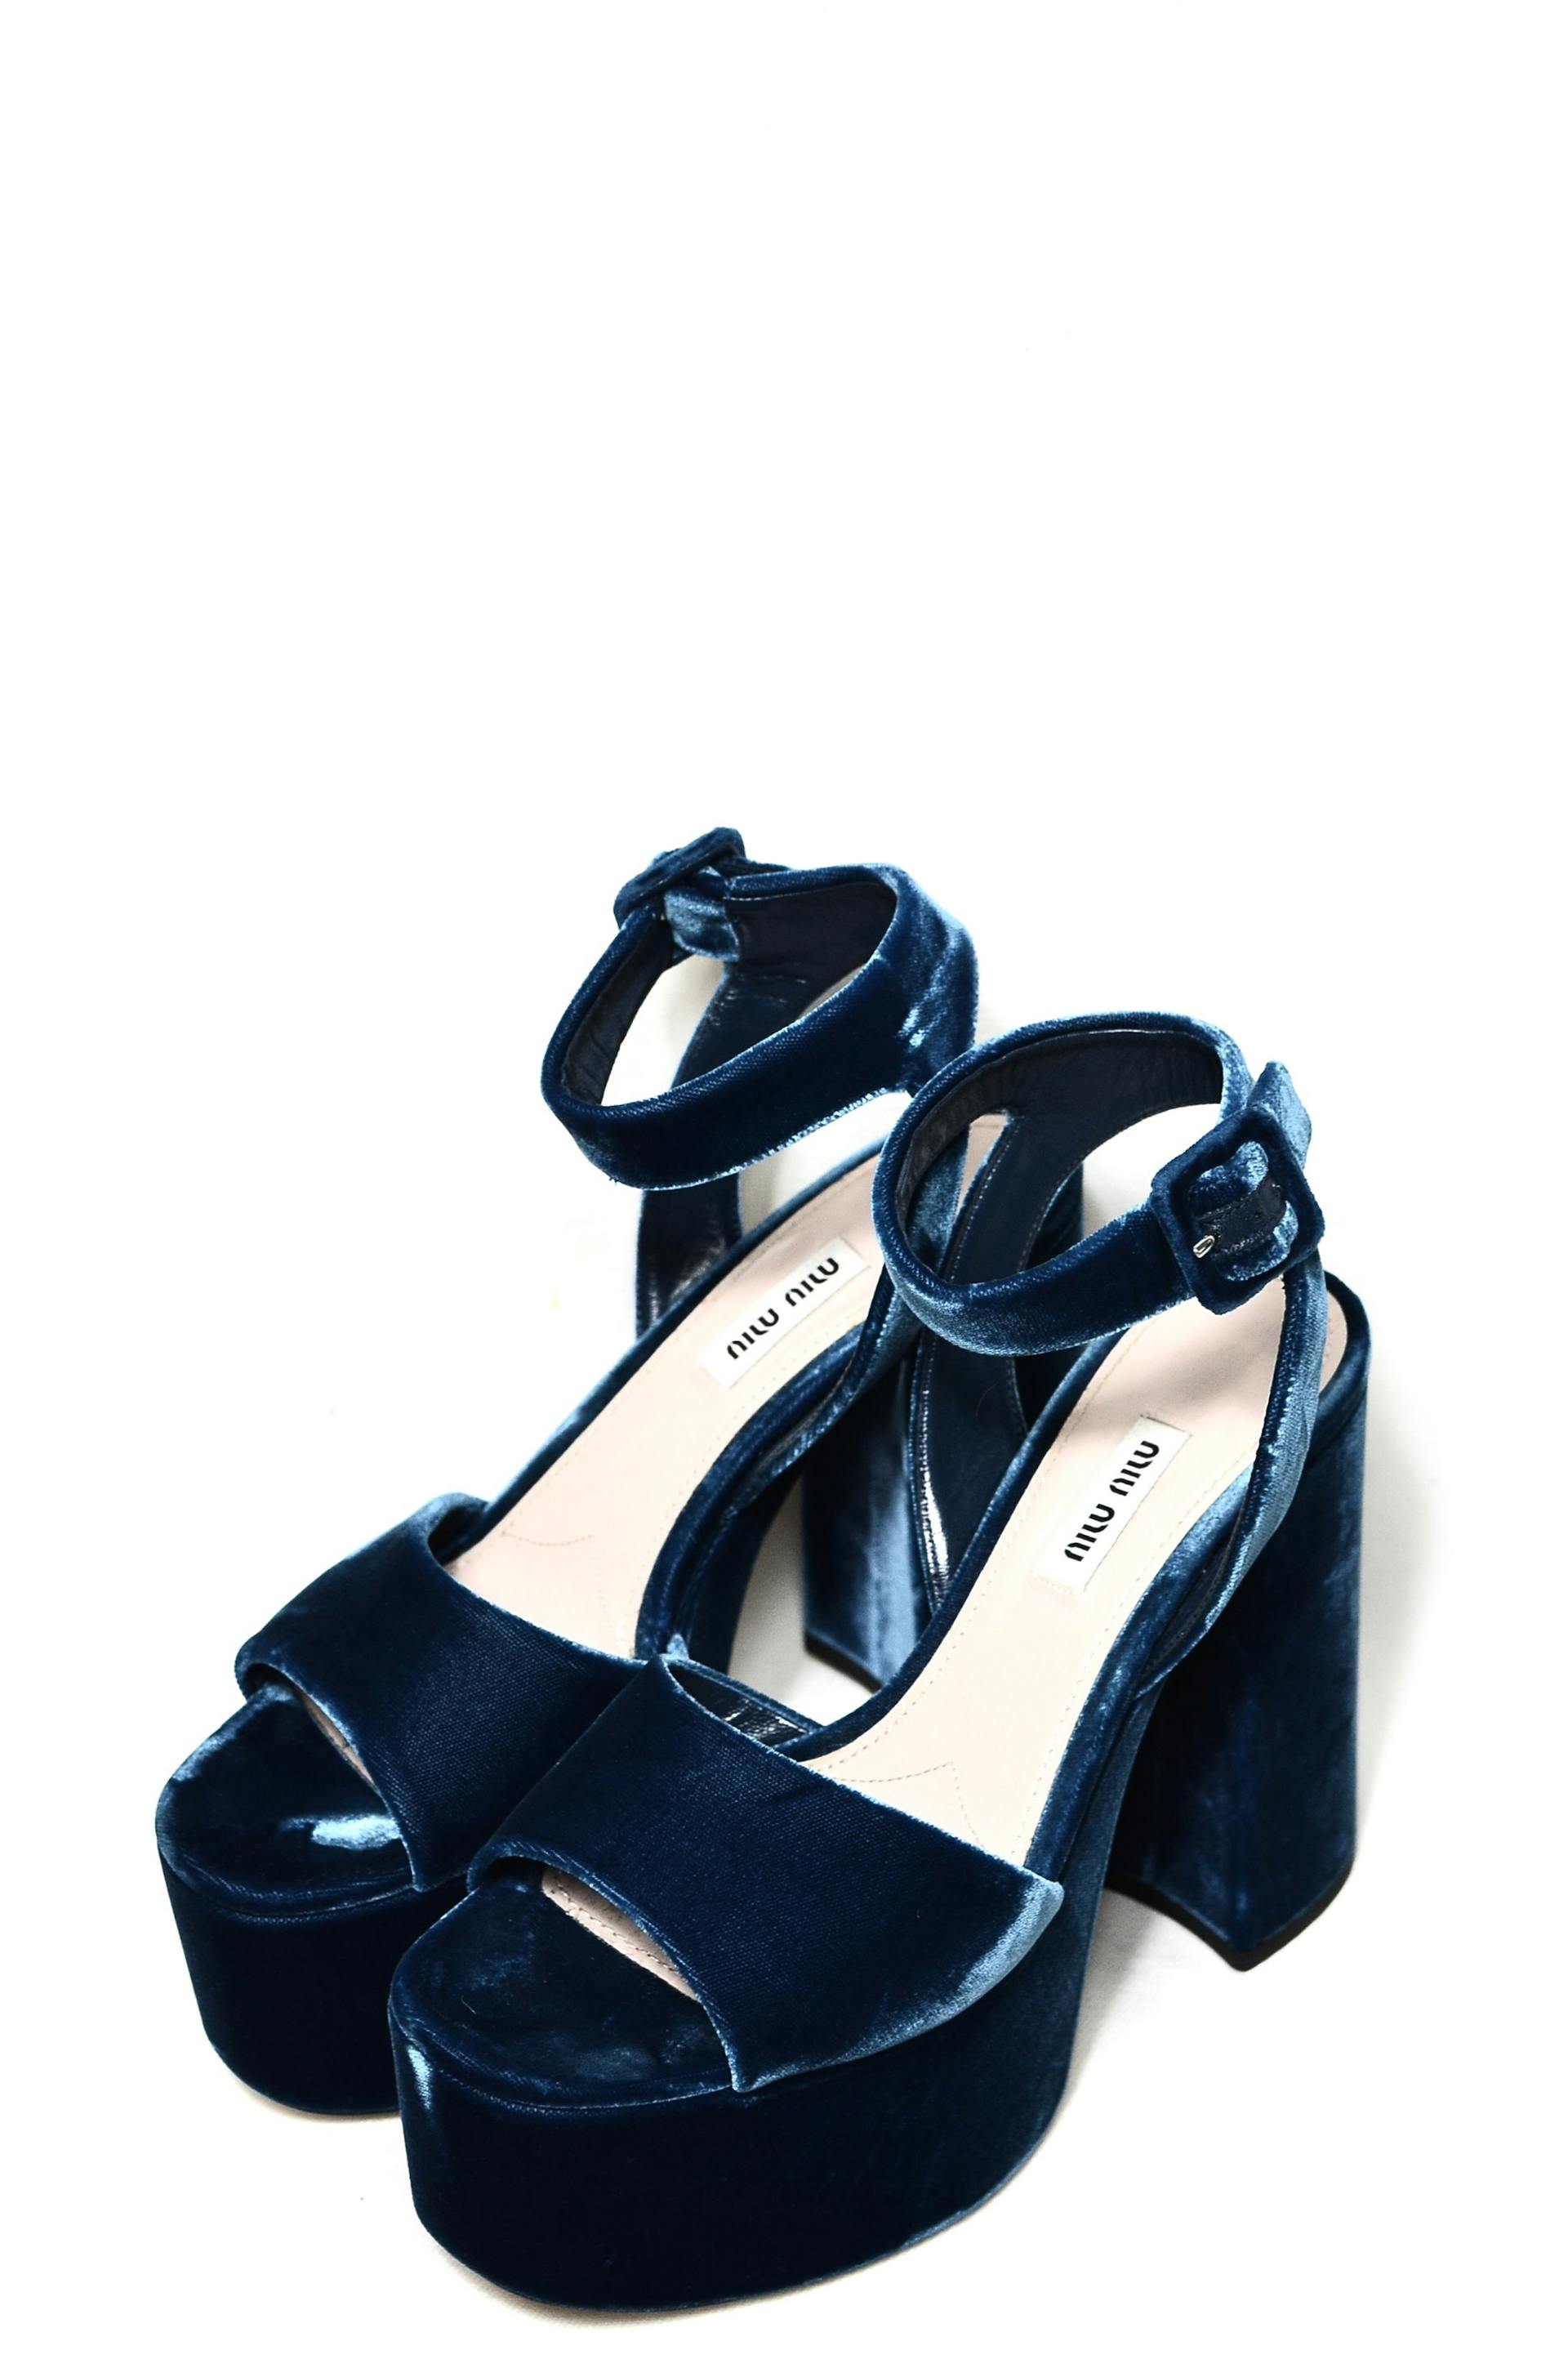 Un par de zapatos de ante azul | Fuente: Pexels